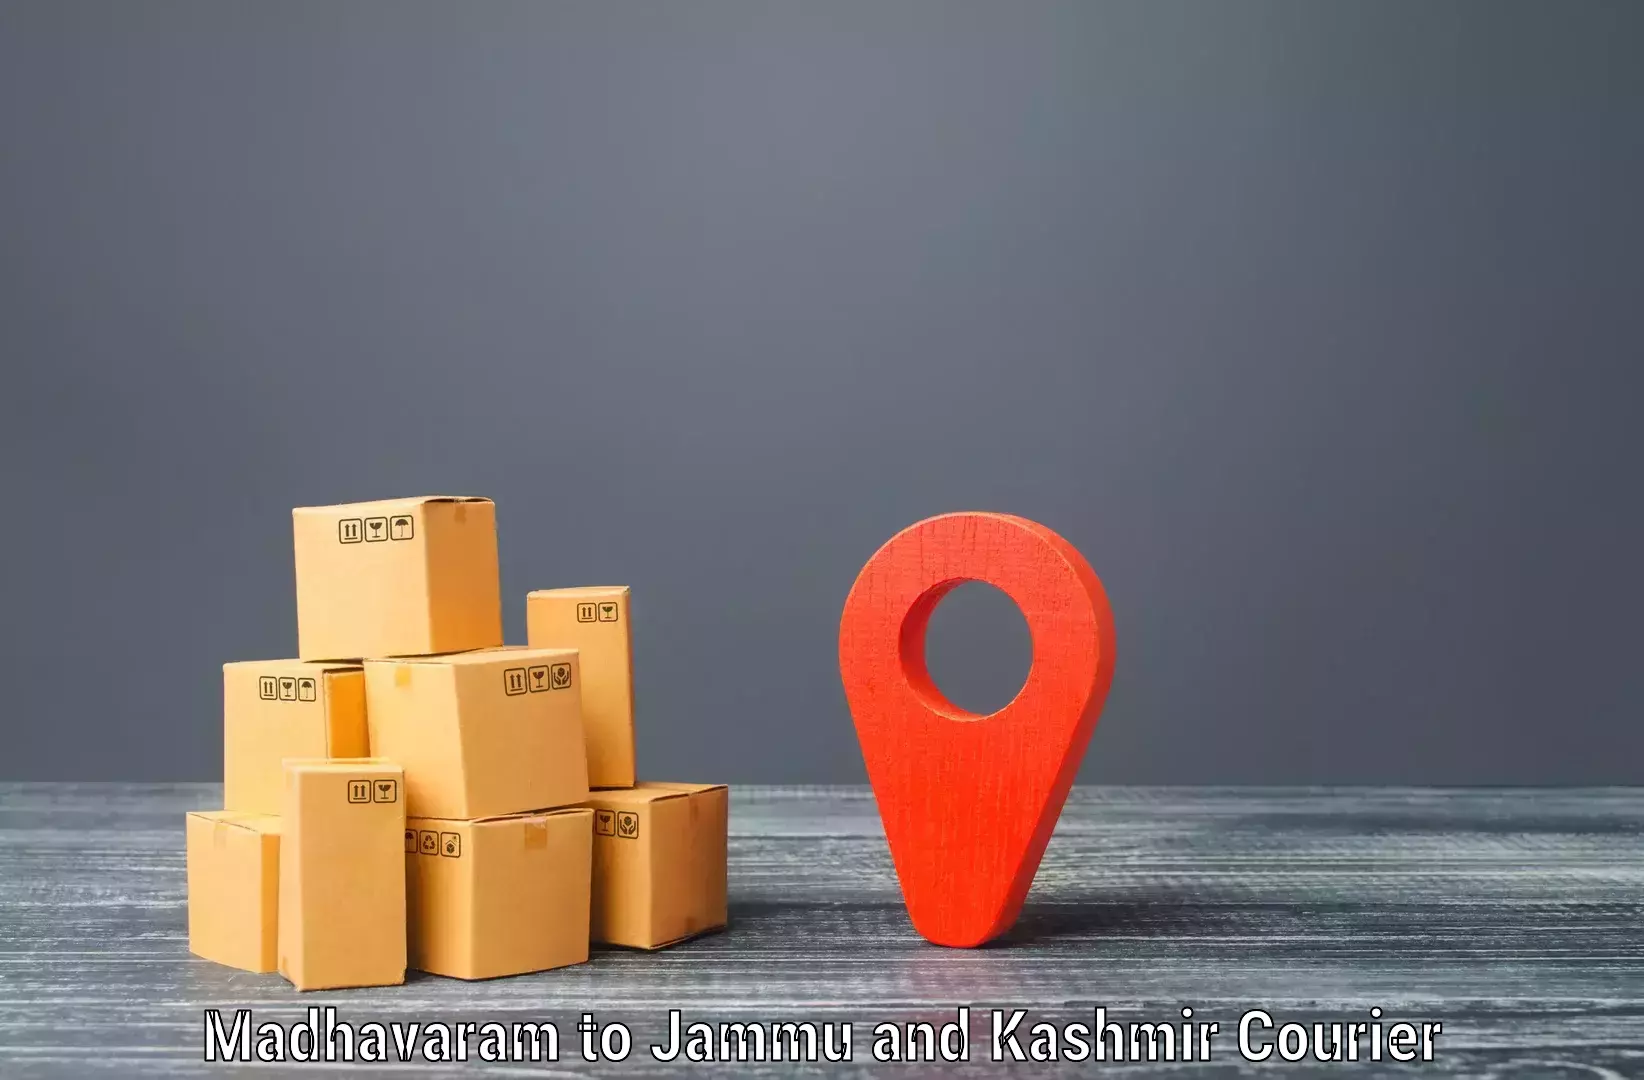 Automated parcel services Madhavaram to NIT Srinagar